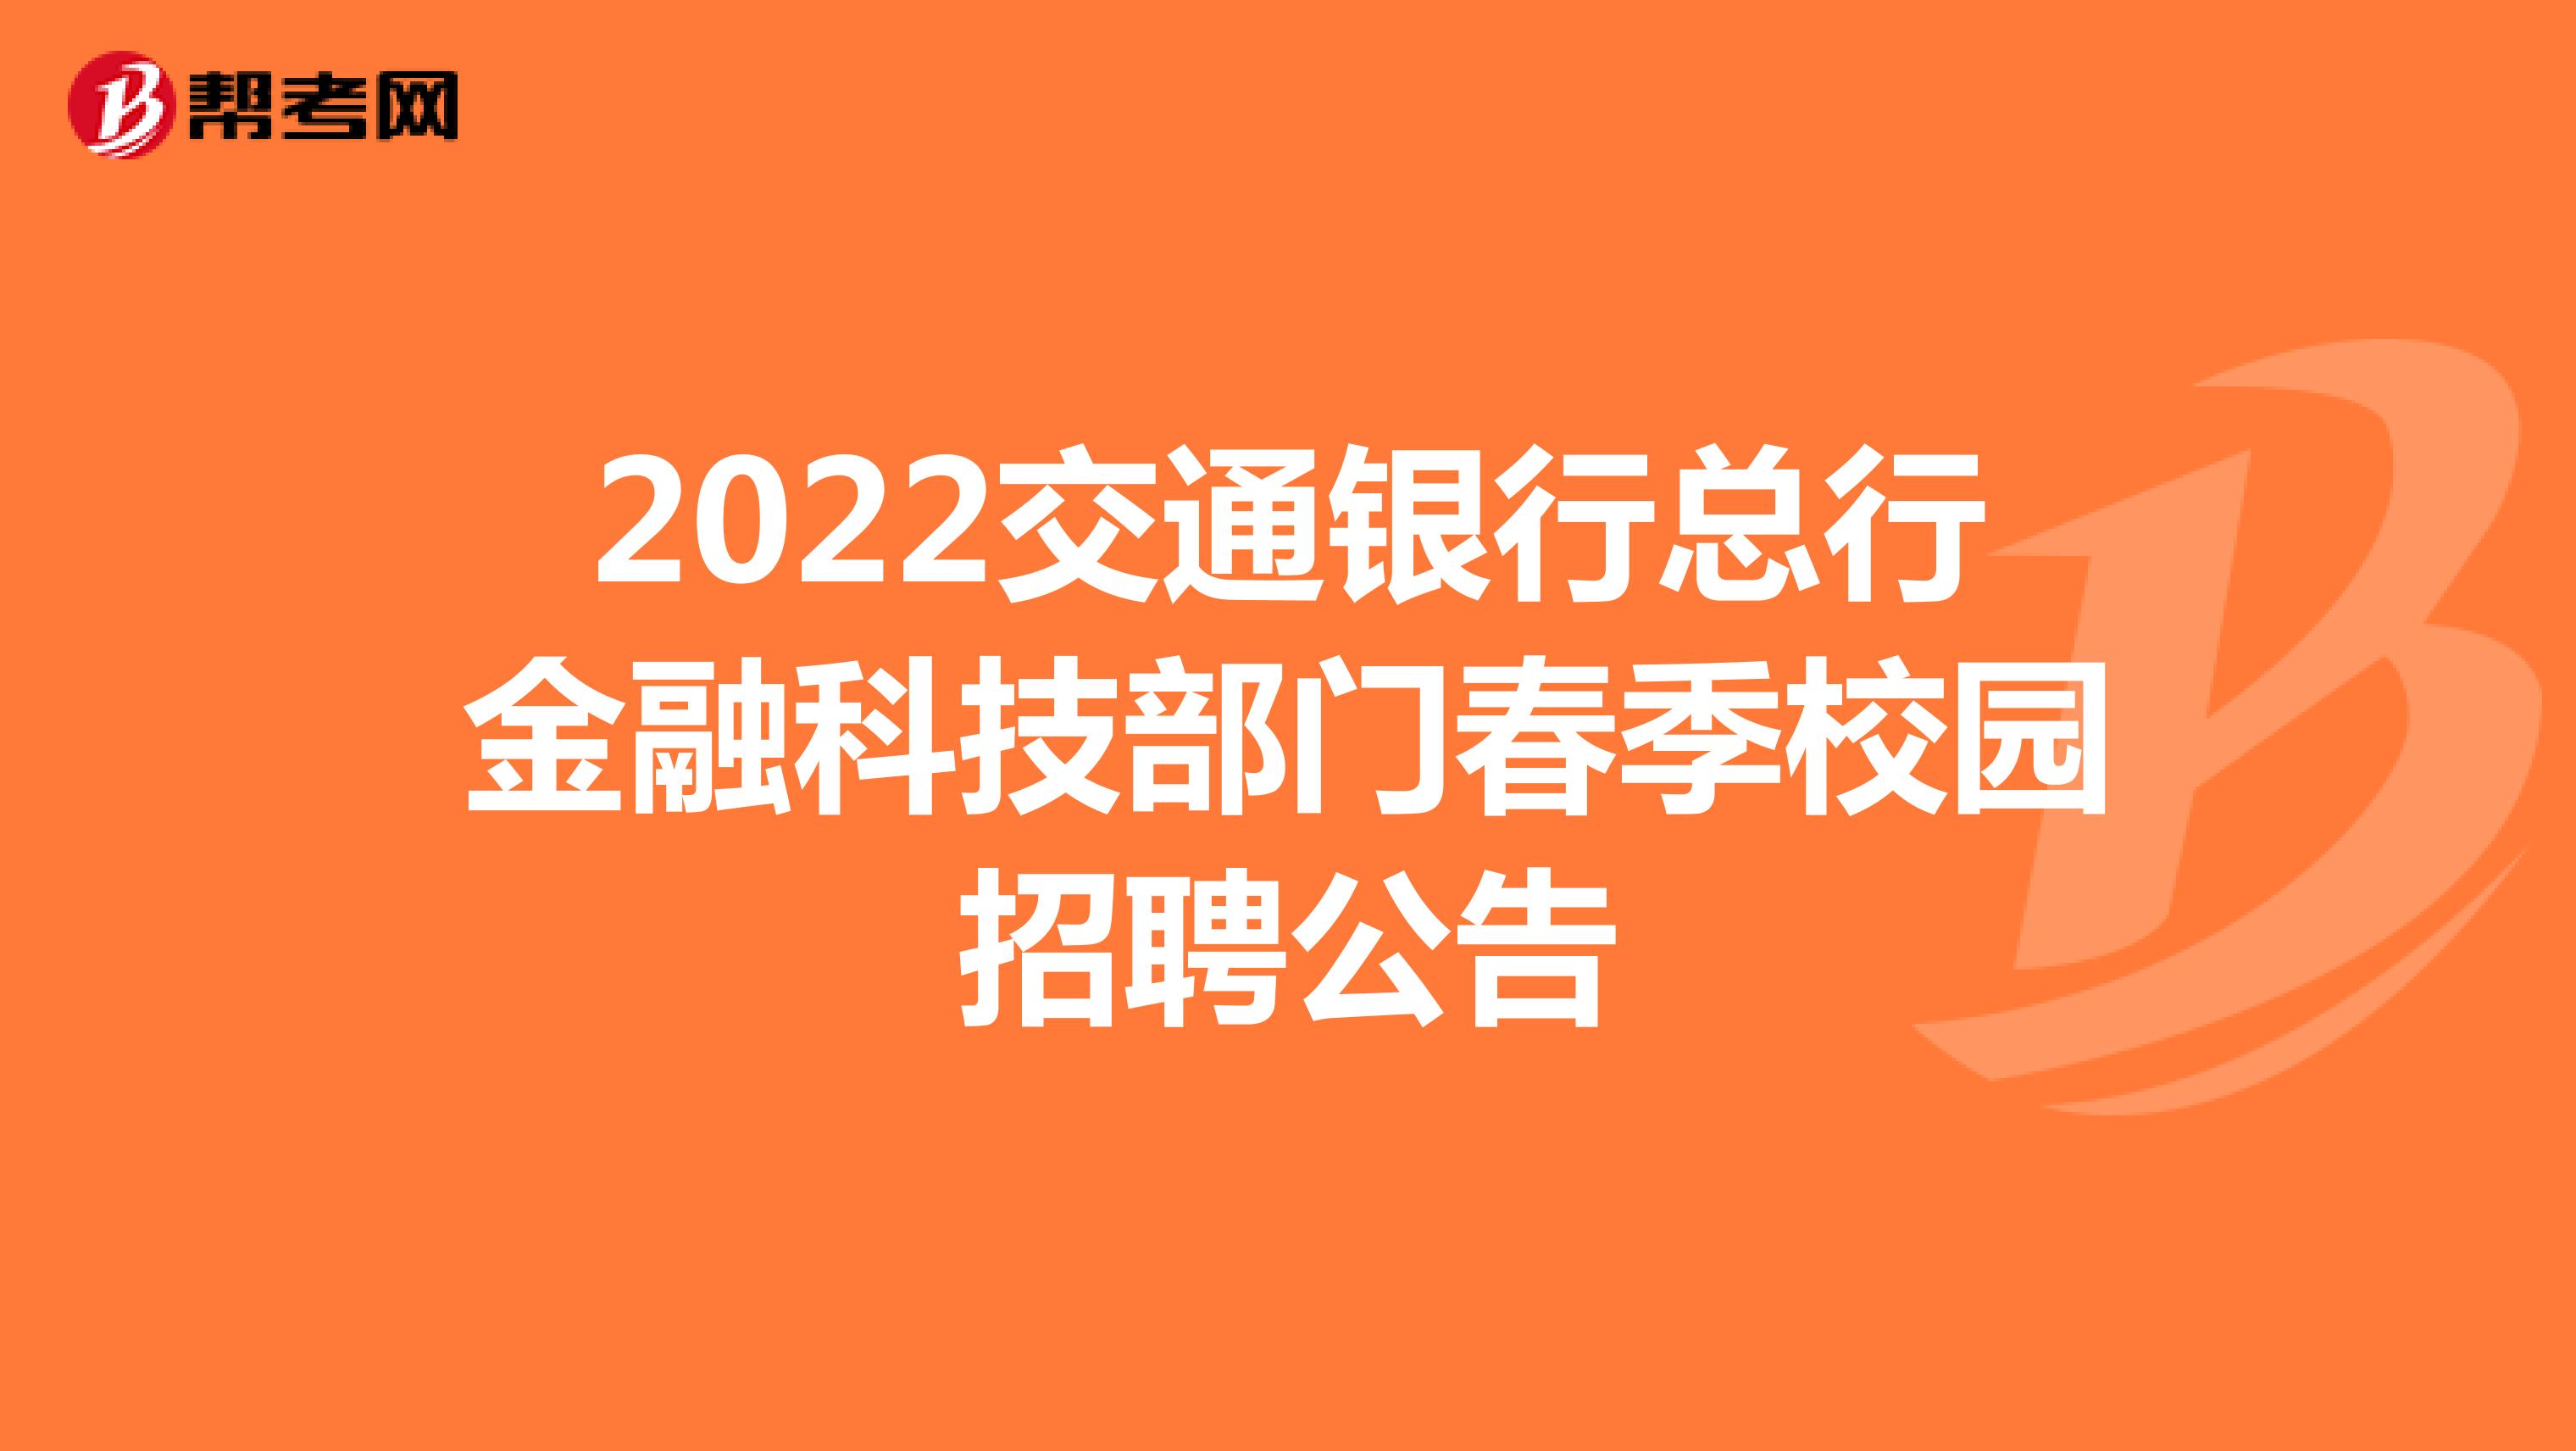 2022交通銀行總行金融科技部門春季校園招聘公告